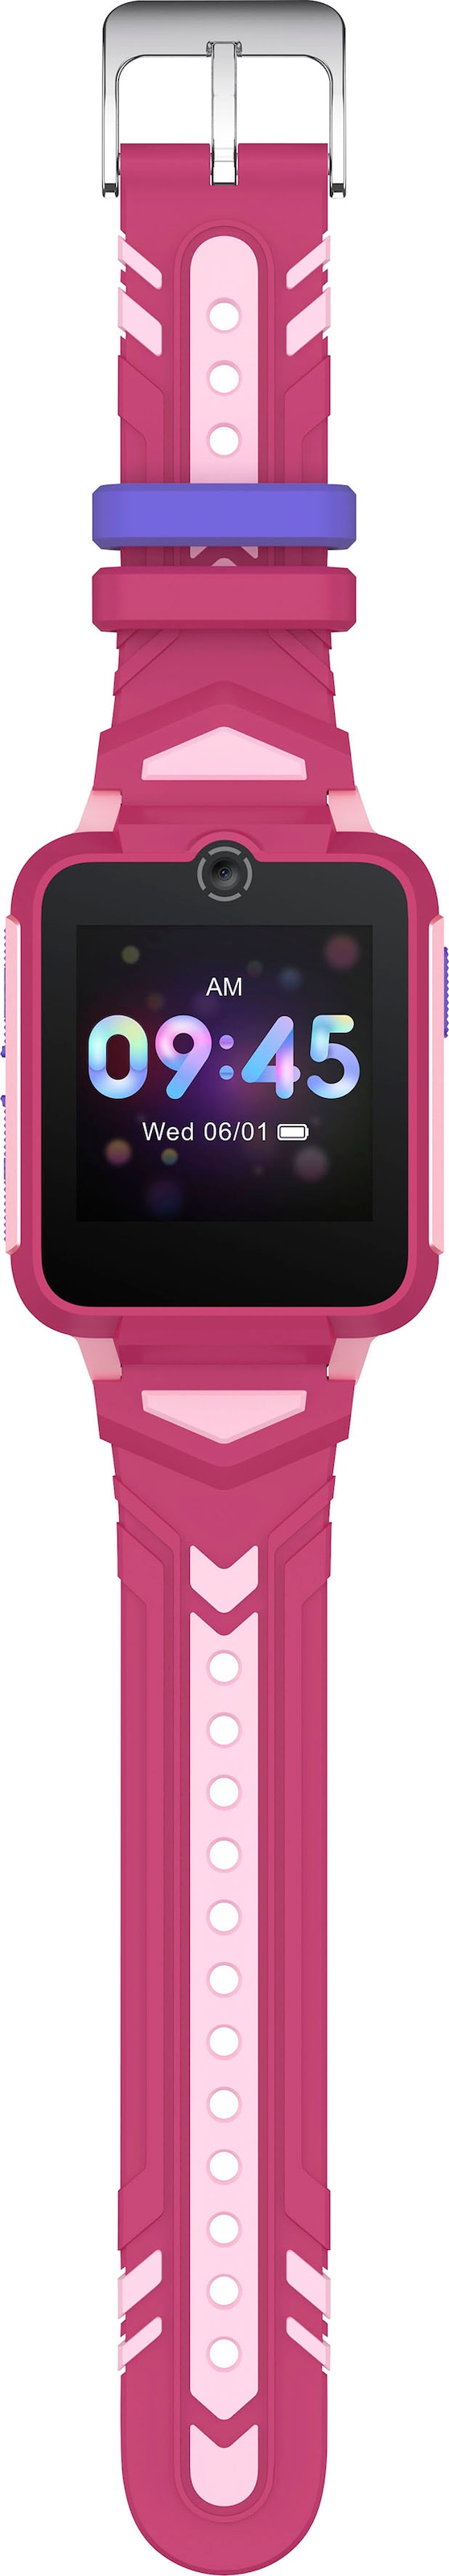 TCL (Proprietär) »MT42X«, Smartwatch kaufen